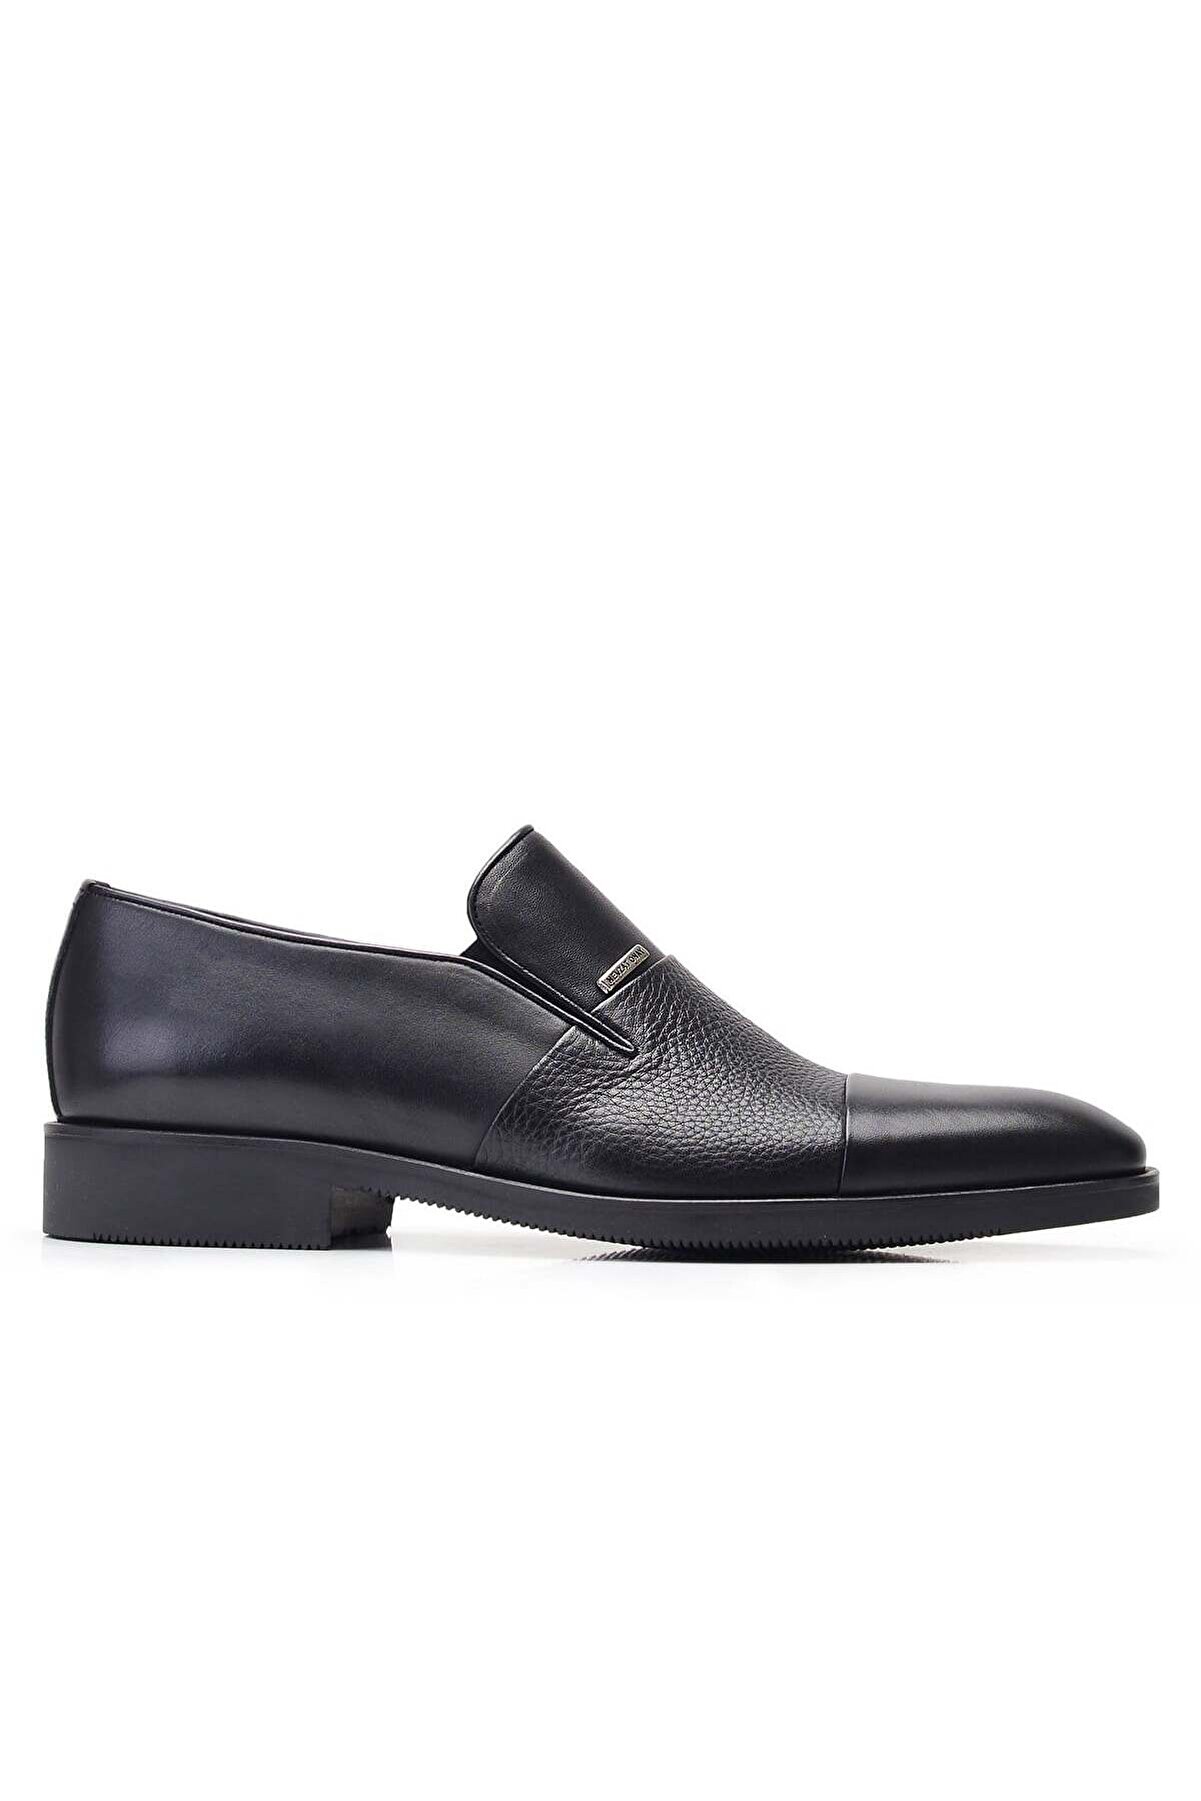 Nevzat Onay Siyah Klasik Loafer Erkek Ayakkabı -11861-